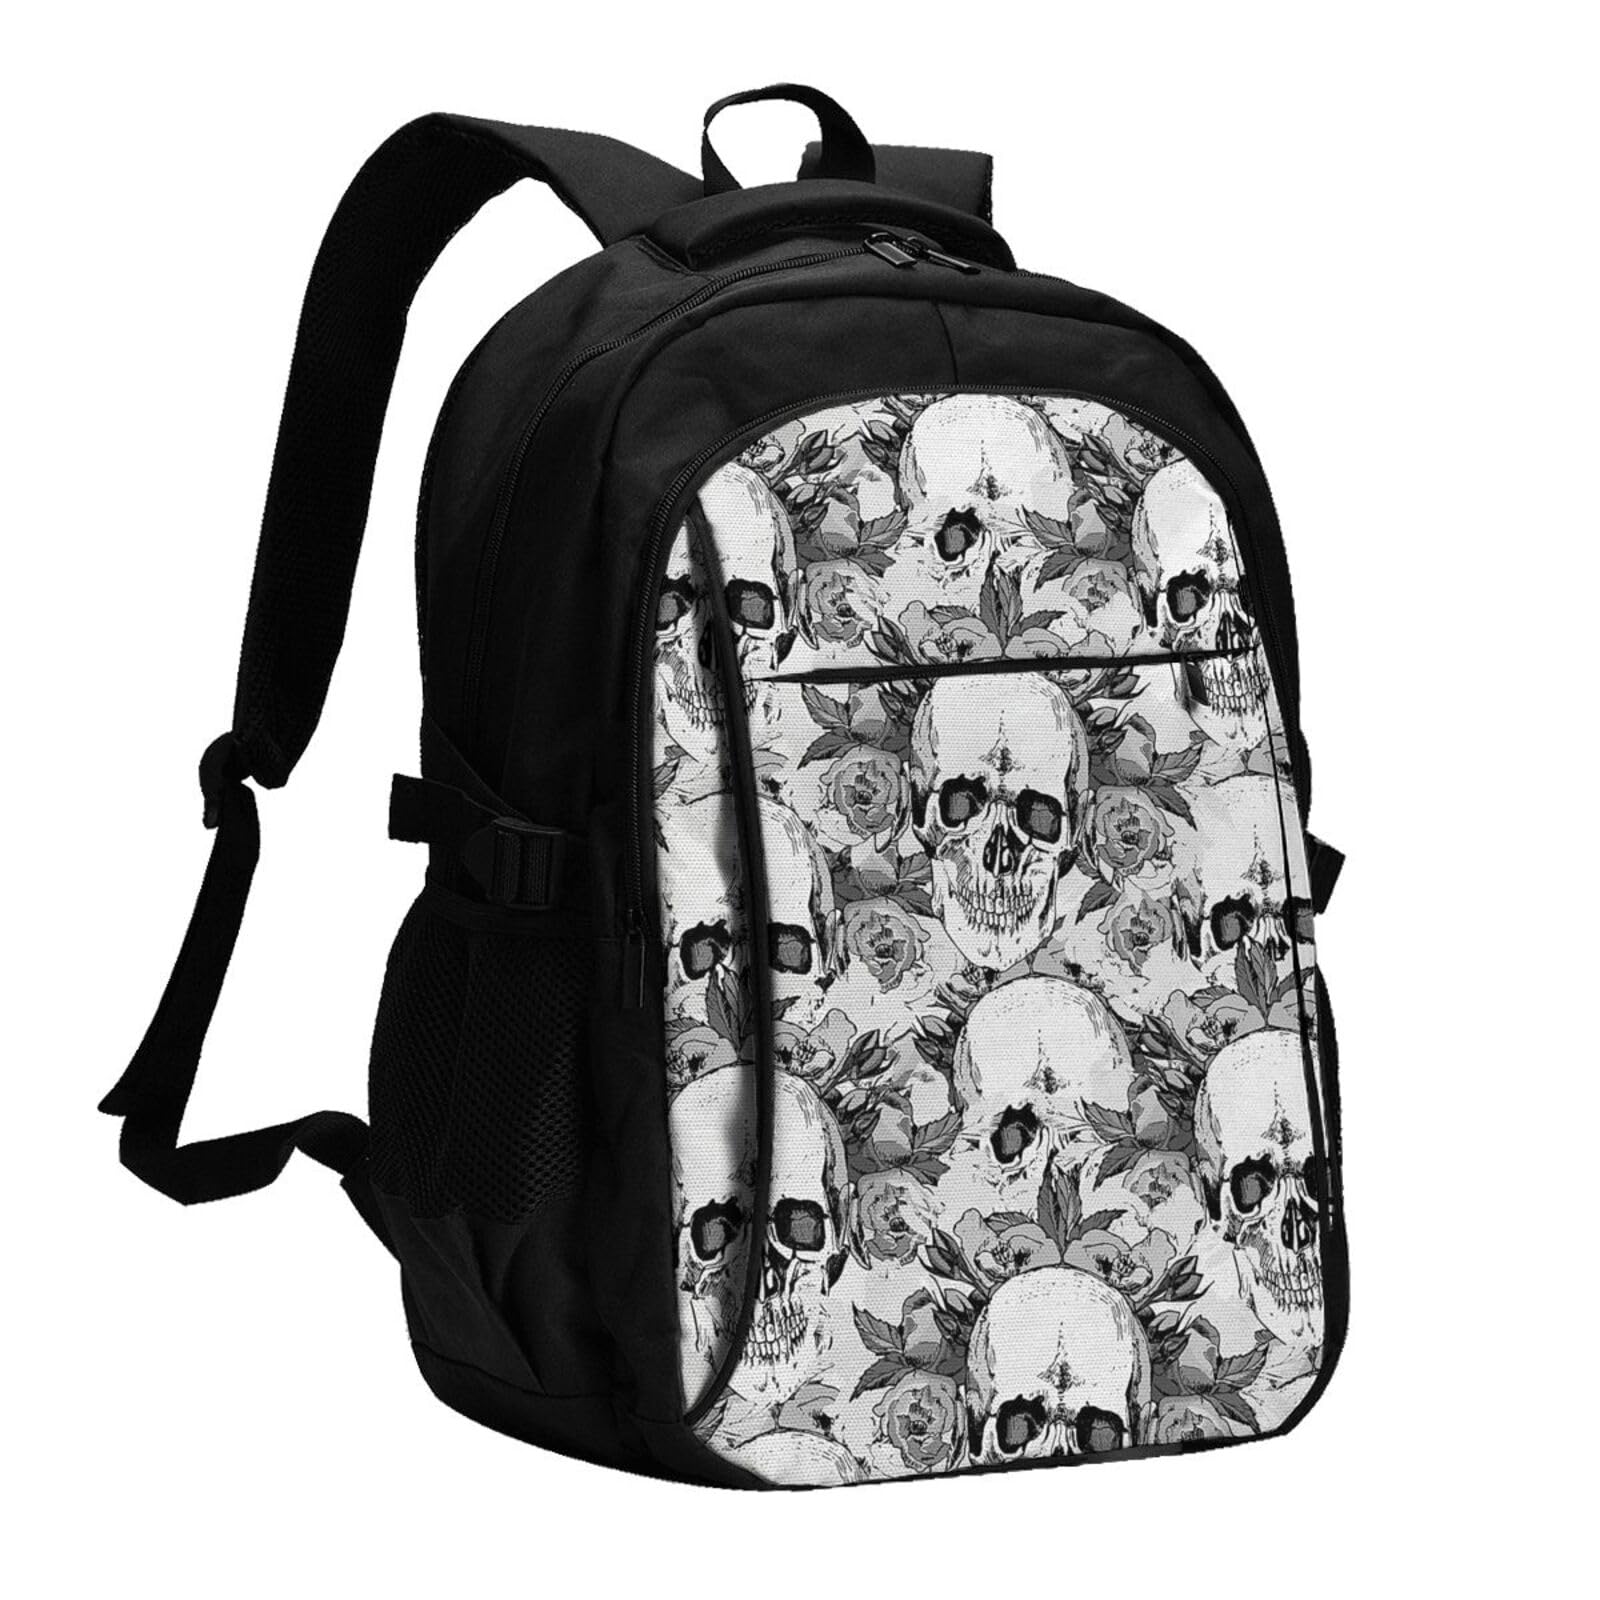 送料無料BAFAFA Skull Skeleton Printed Backpack Laptop Bookbag With USB Charger Daypack For Travel Business並行輸入品